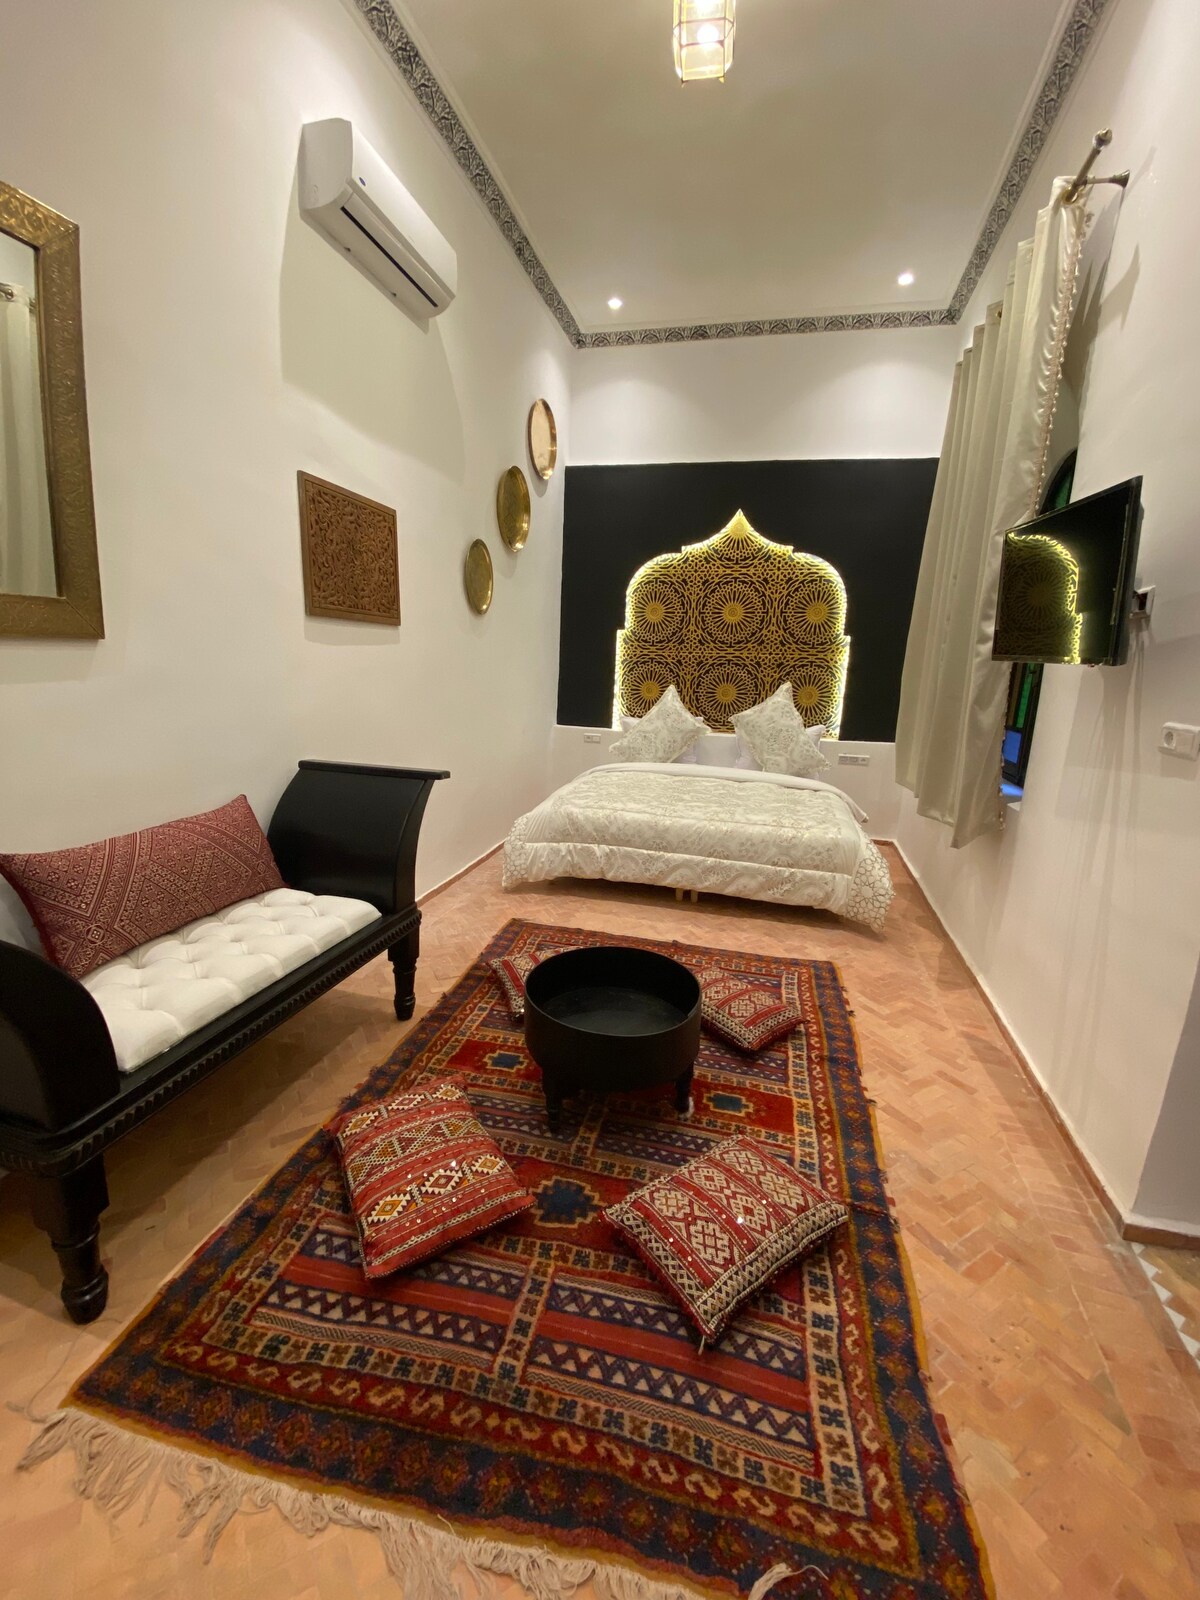 Riad Zyna私有化： 6间卧室12人入住。